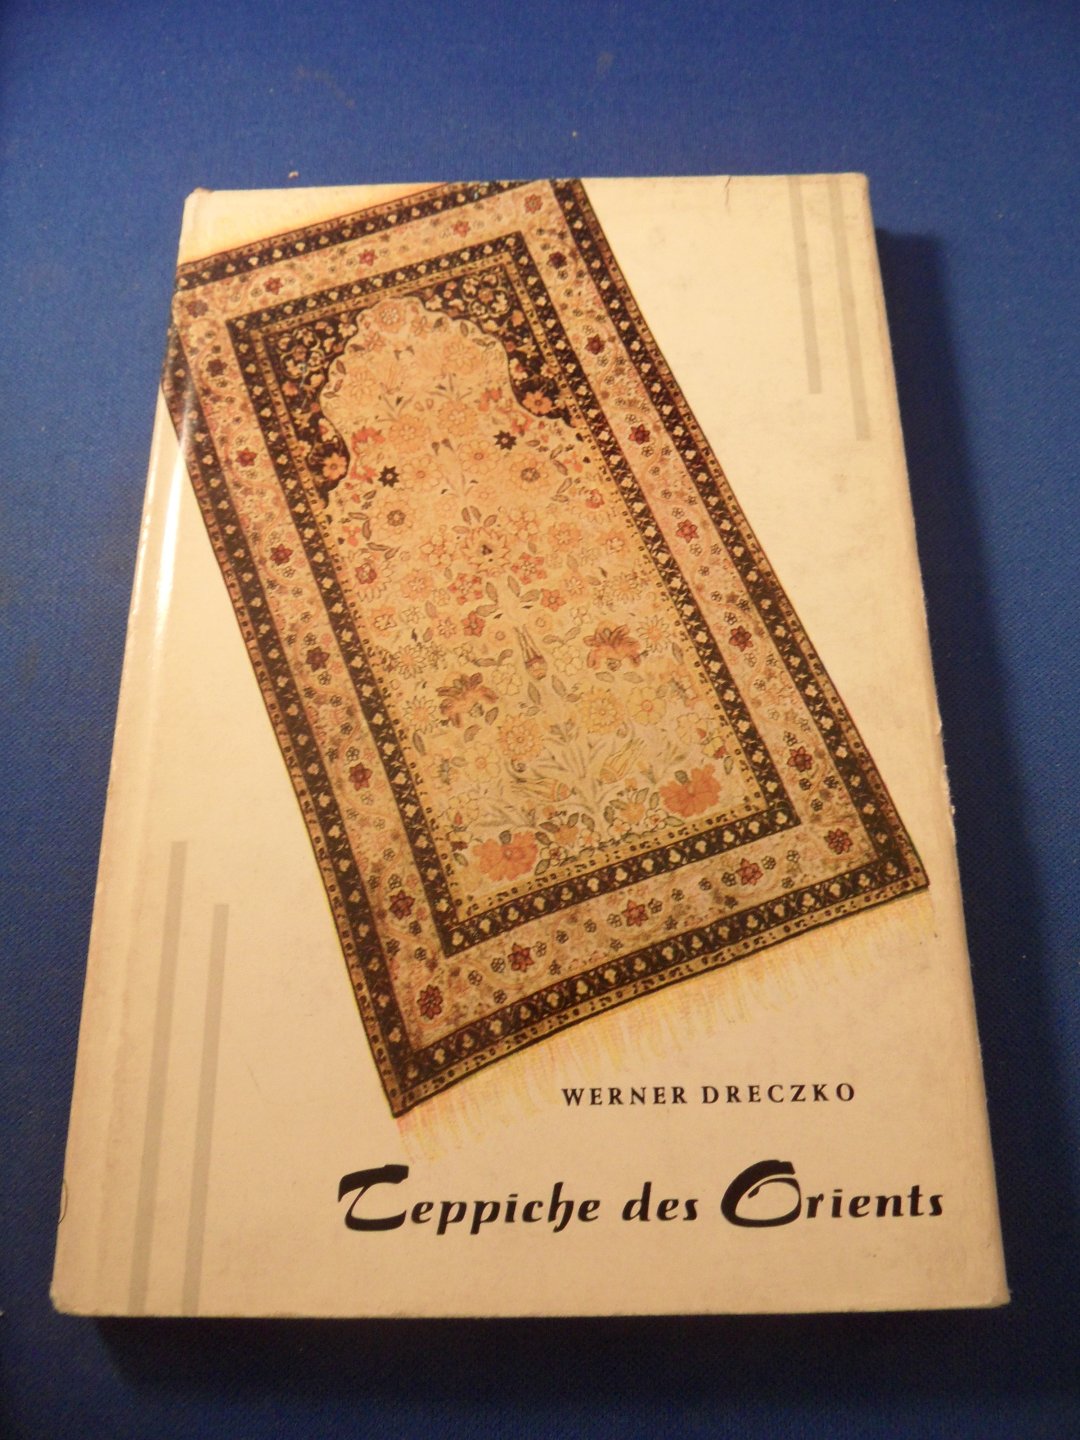 Dreczko, Werner - Teppiche des Orients